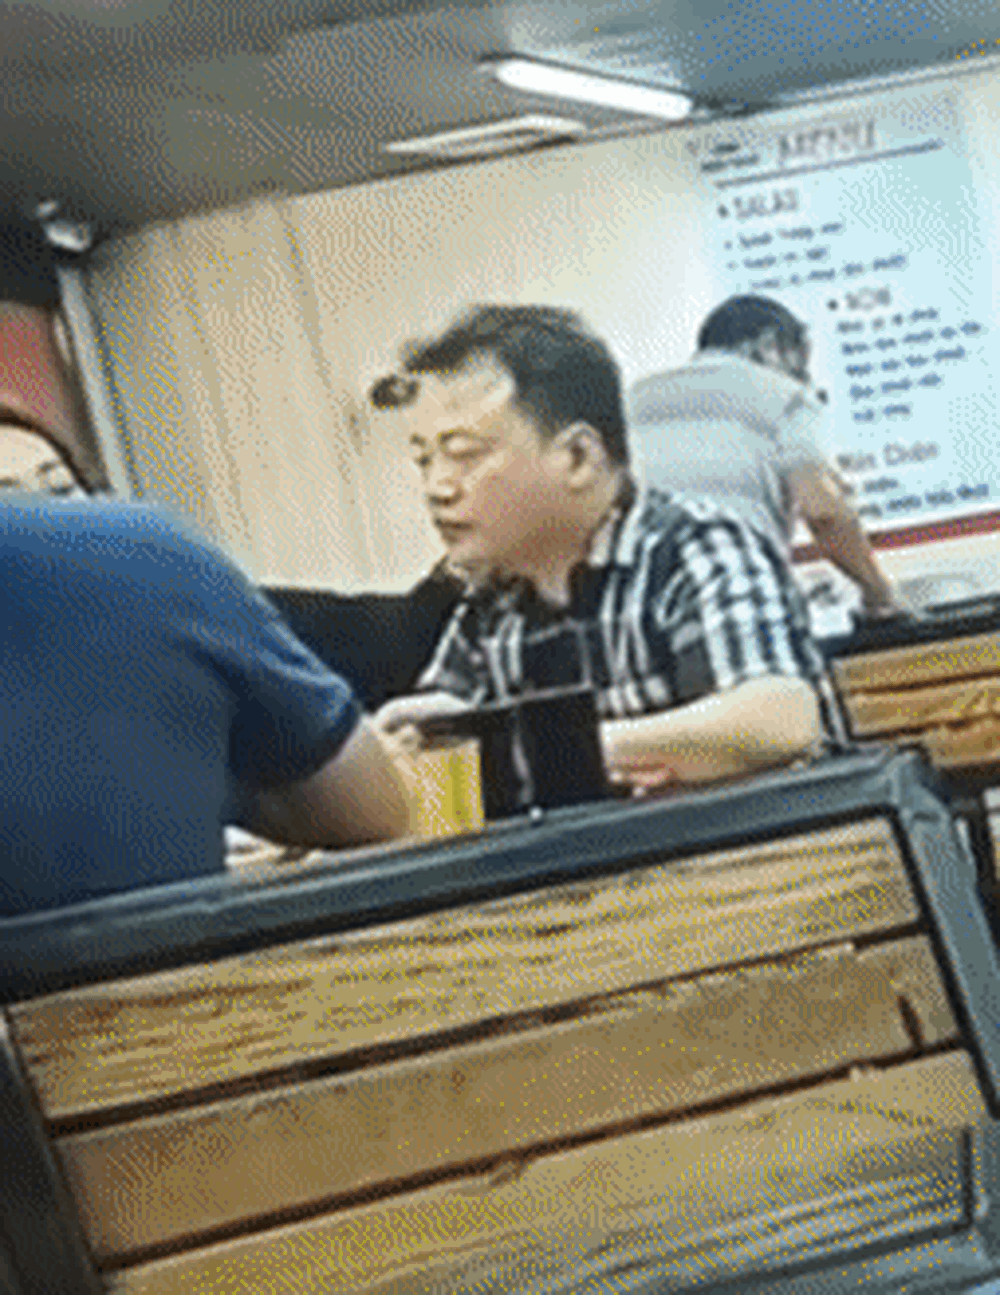  Shark Bình - Phương Oanh lại bị lan truyền clip quay lén, netizen lên tiếng: “Đi ăn cũng không yên”  - Ảnh 1.